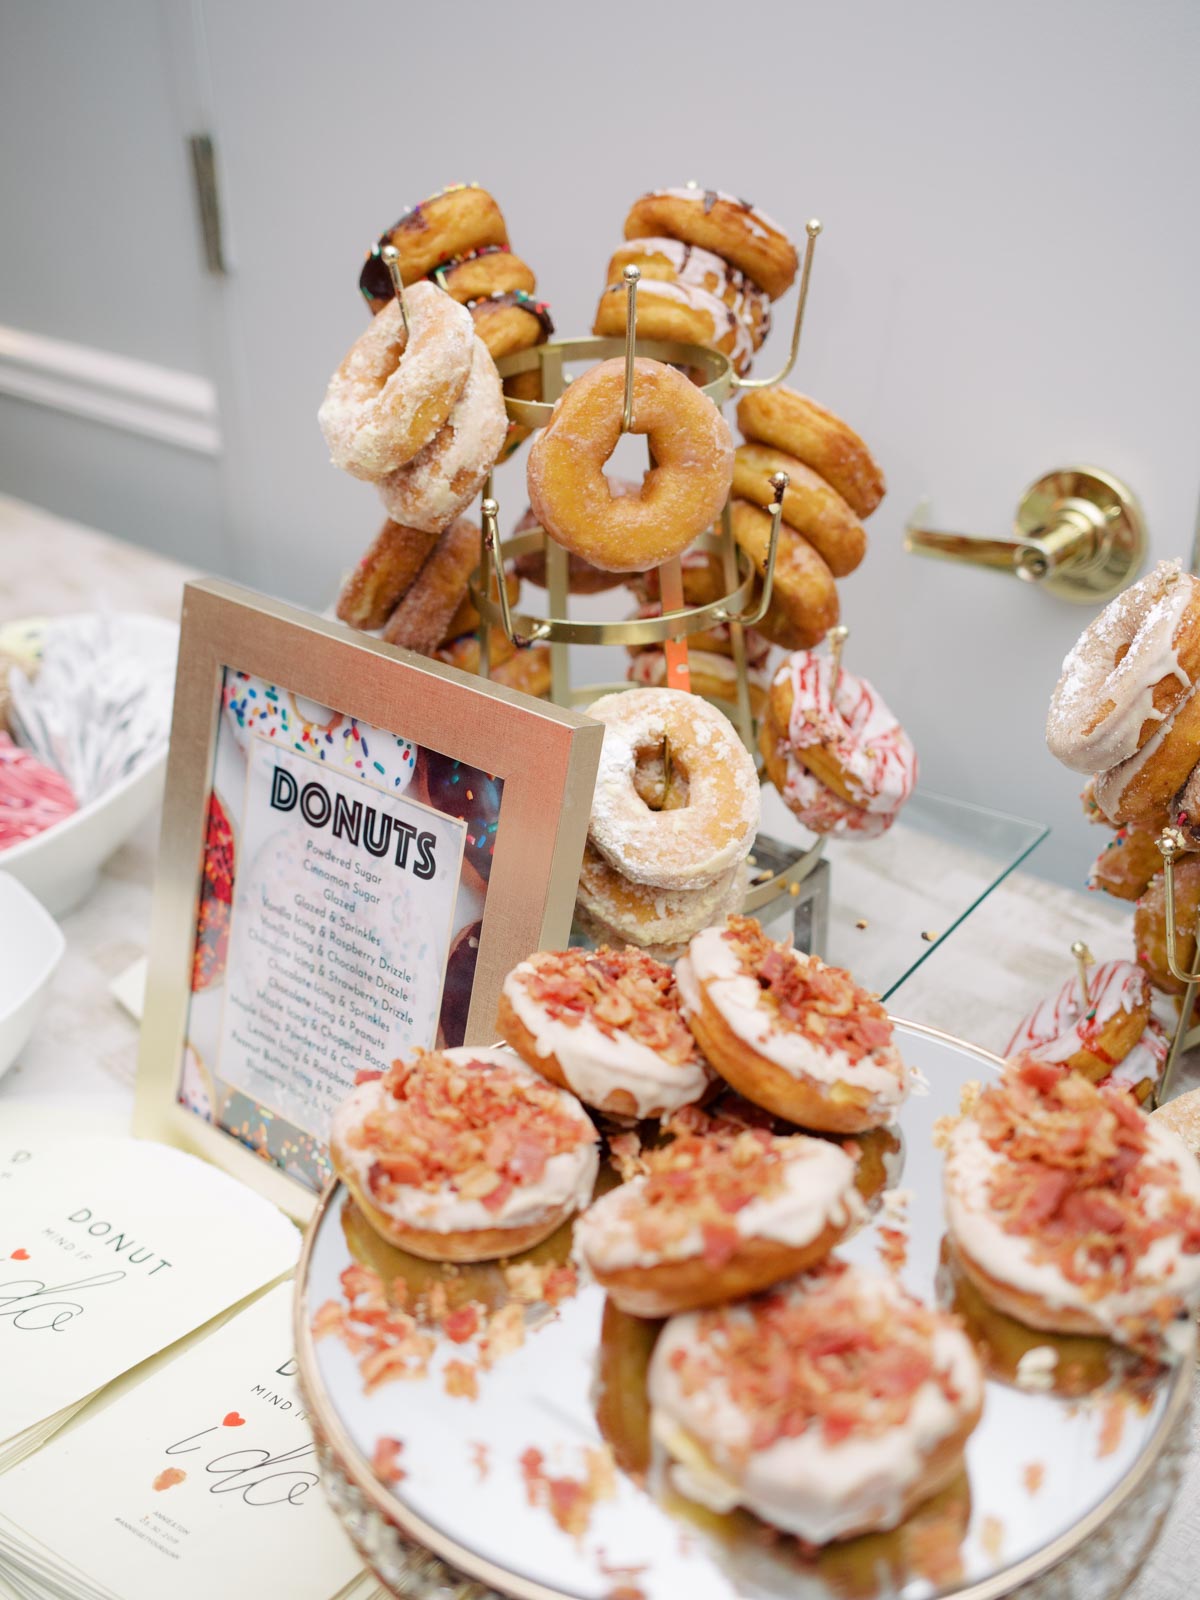 Donut dessert bar at wedding reception in Arlington